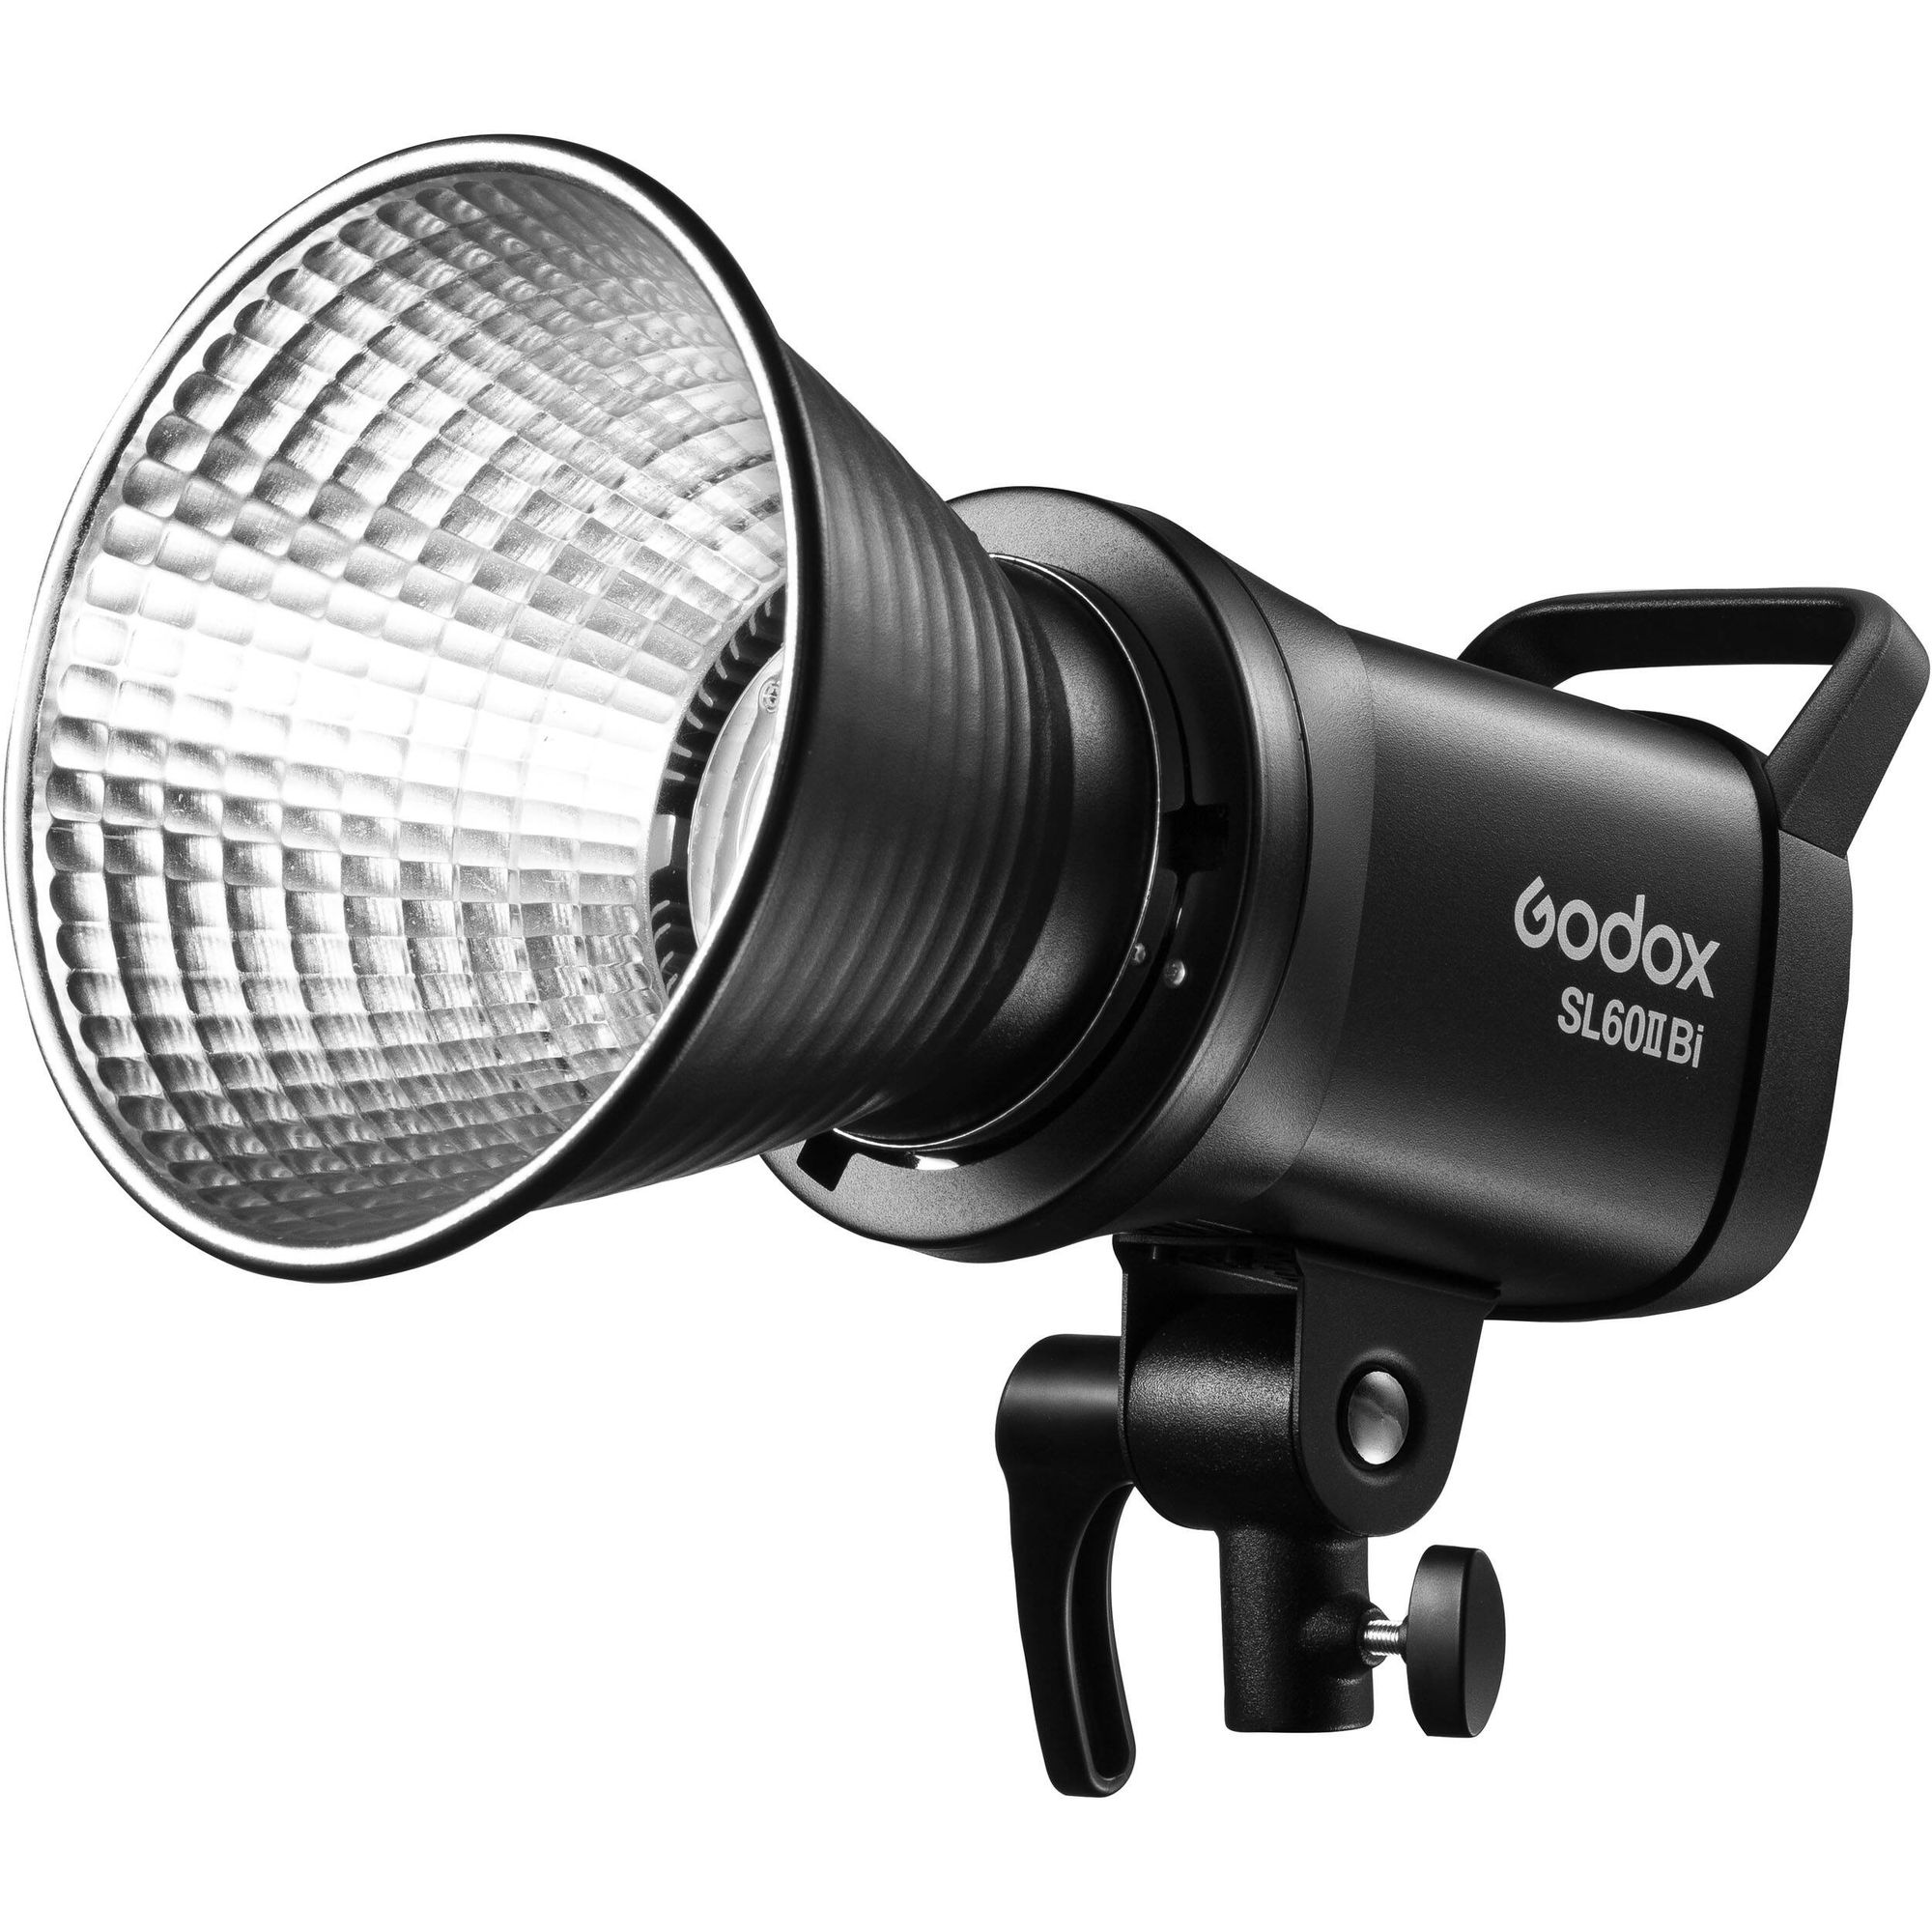 осветитель светодиодный godox sl60iibi с пультом ду Осветитель светодиодный Godox SL60IIBi